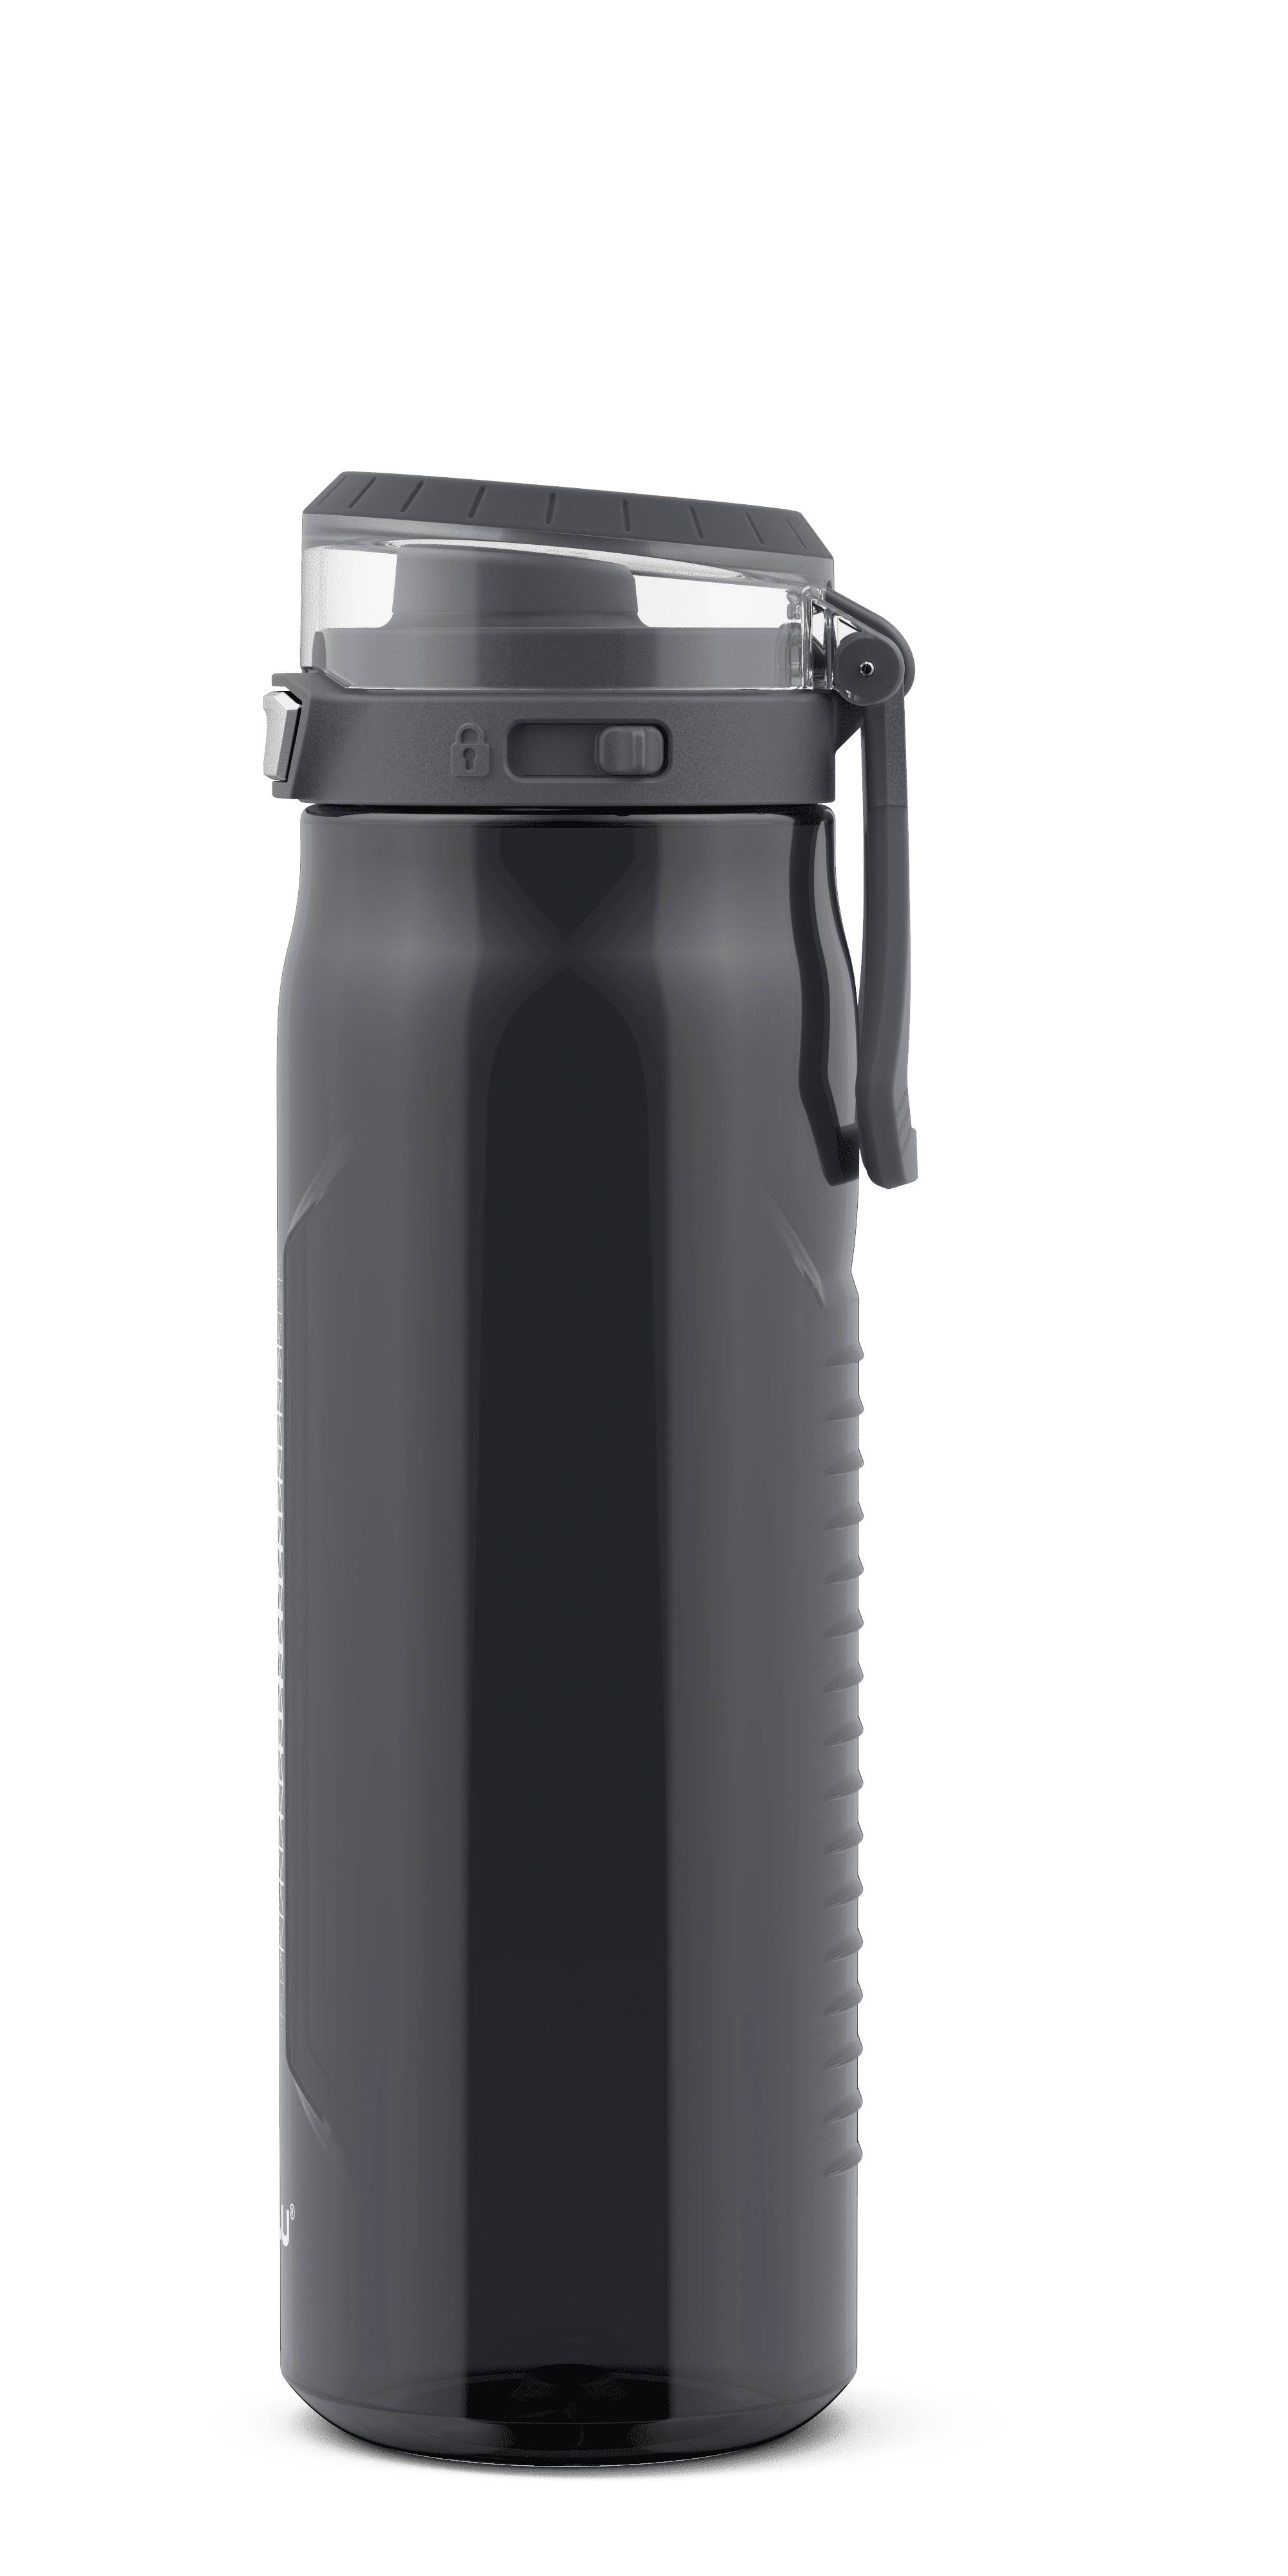 Zulu 40oz Swift Stainless Steel Water Bottle, Gray, Size: 40 fl oz